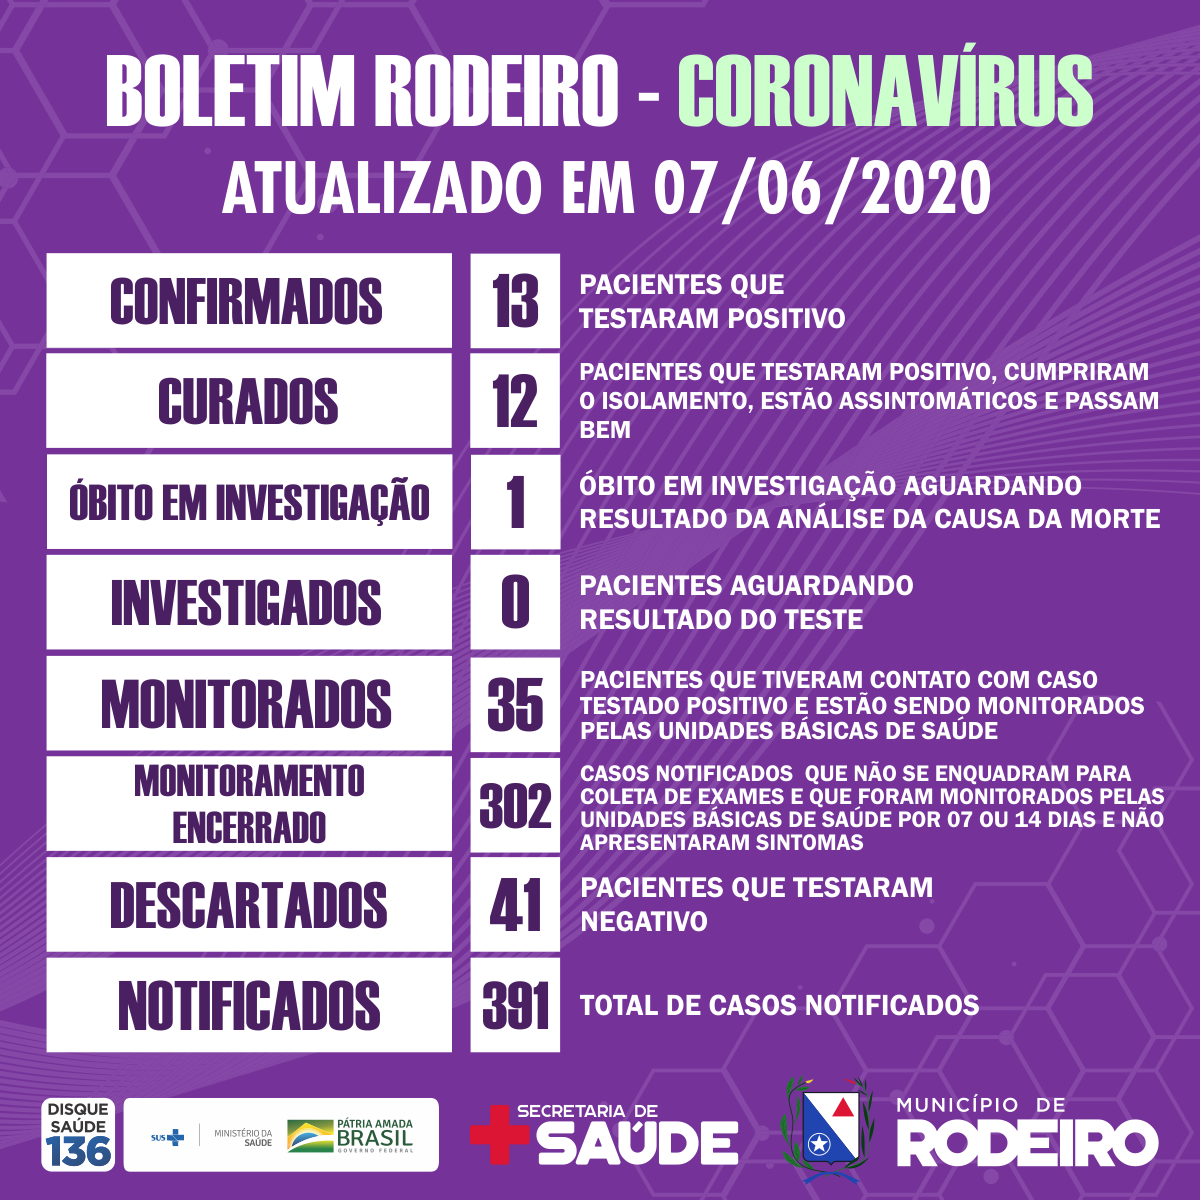 Boletim epidemiológico do Município de Rodeiro coronavírus, atualizado em 07/06/2020